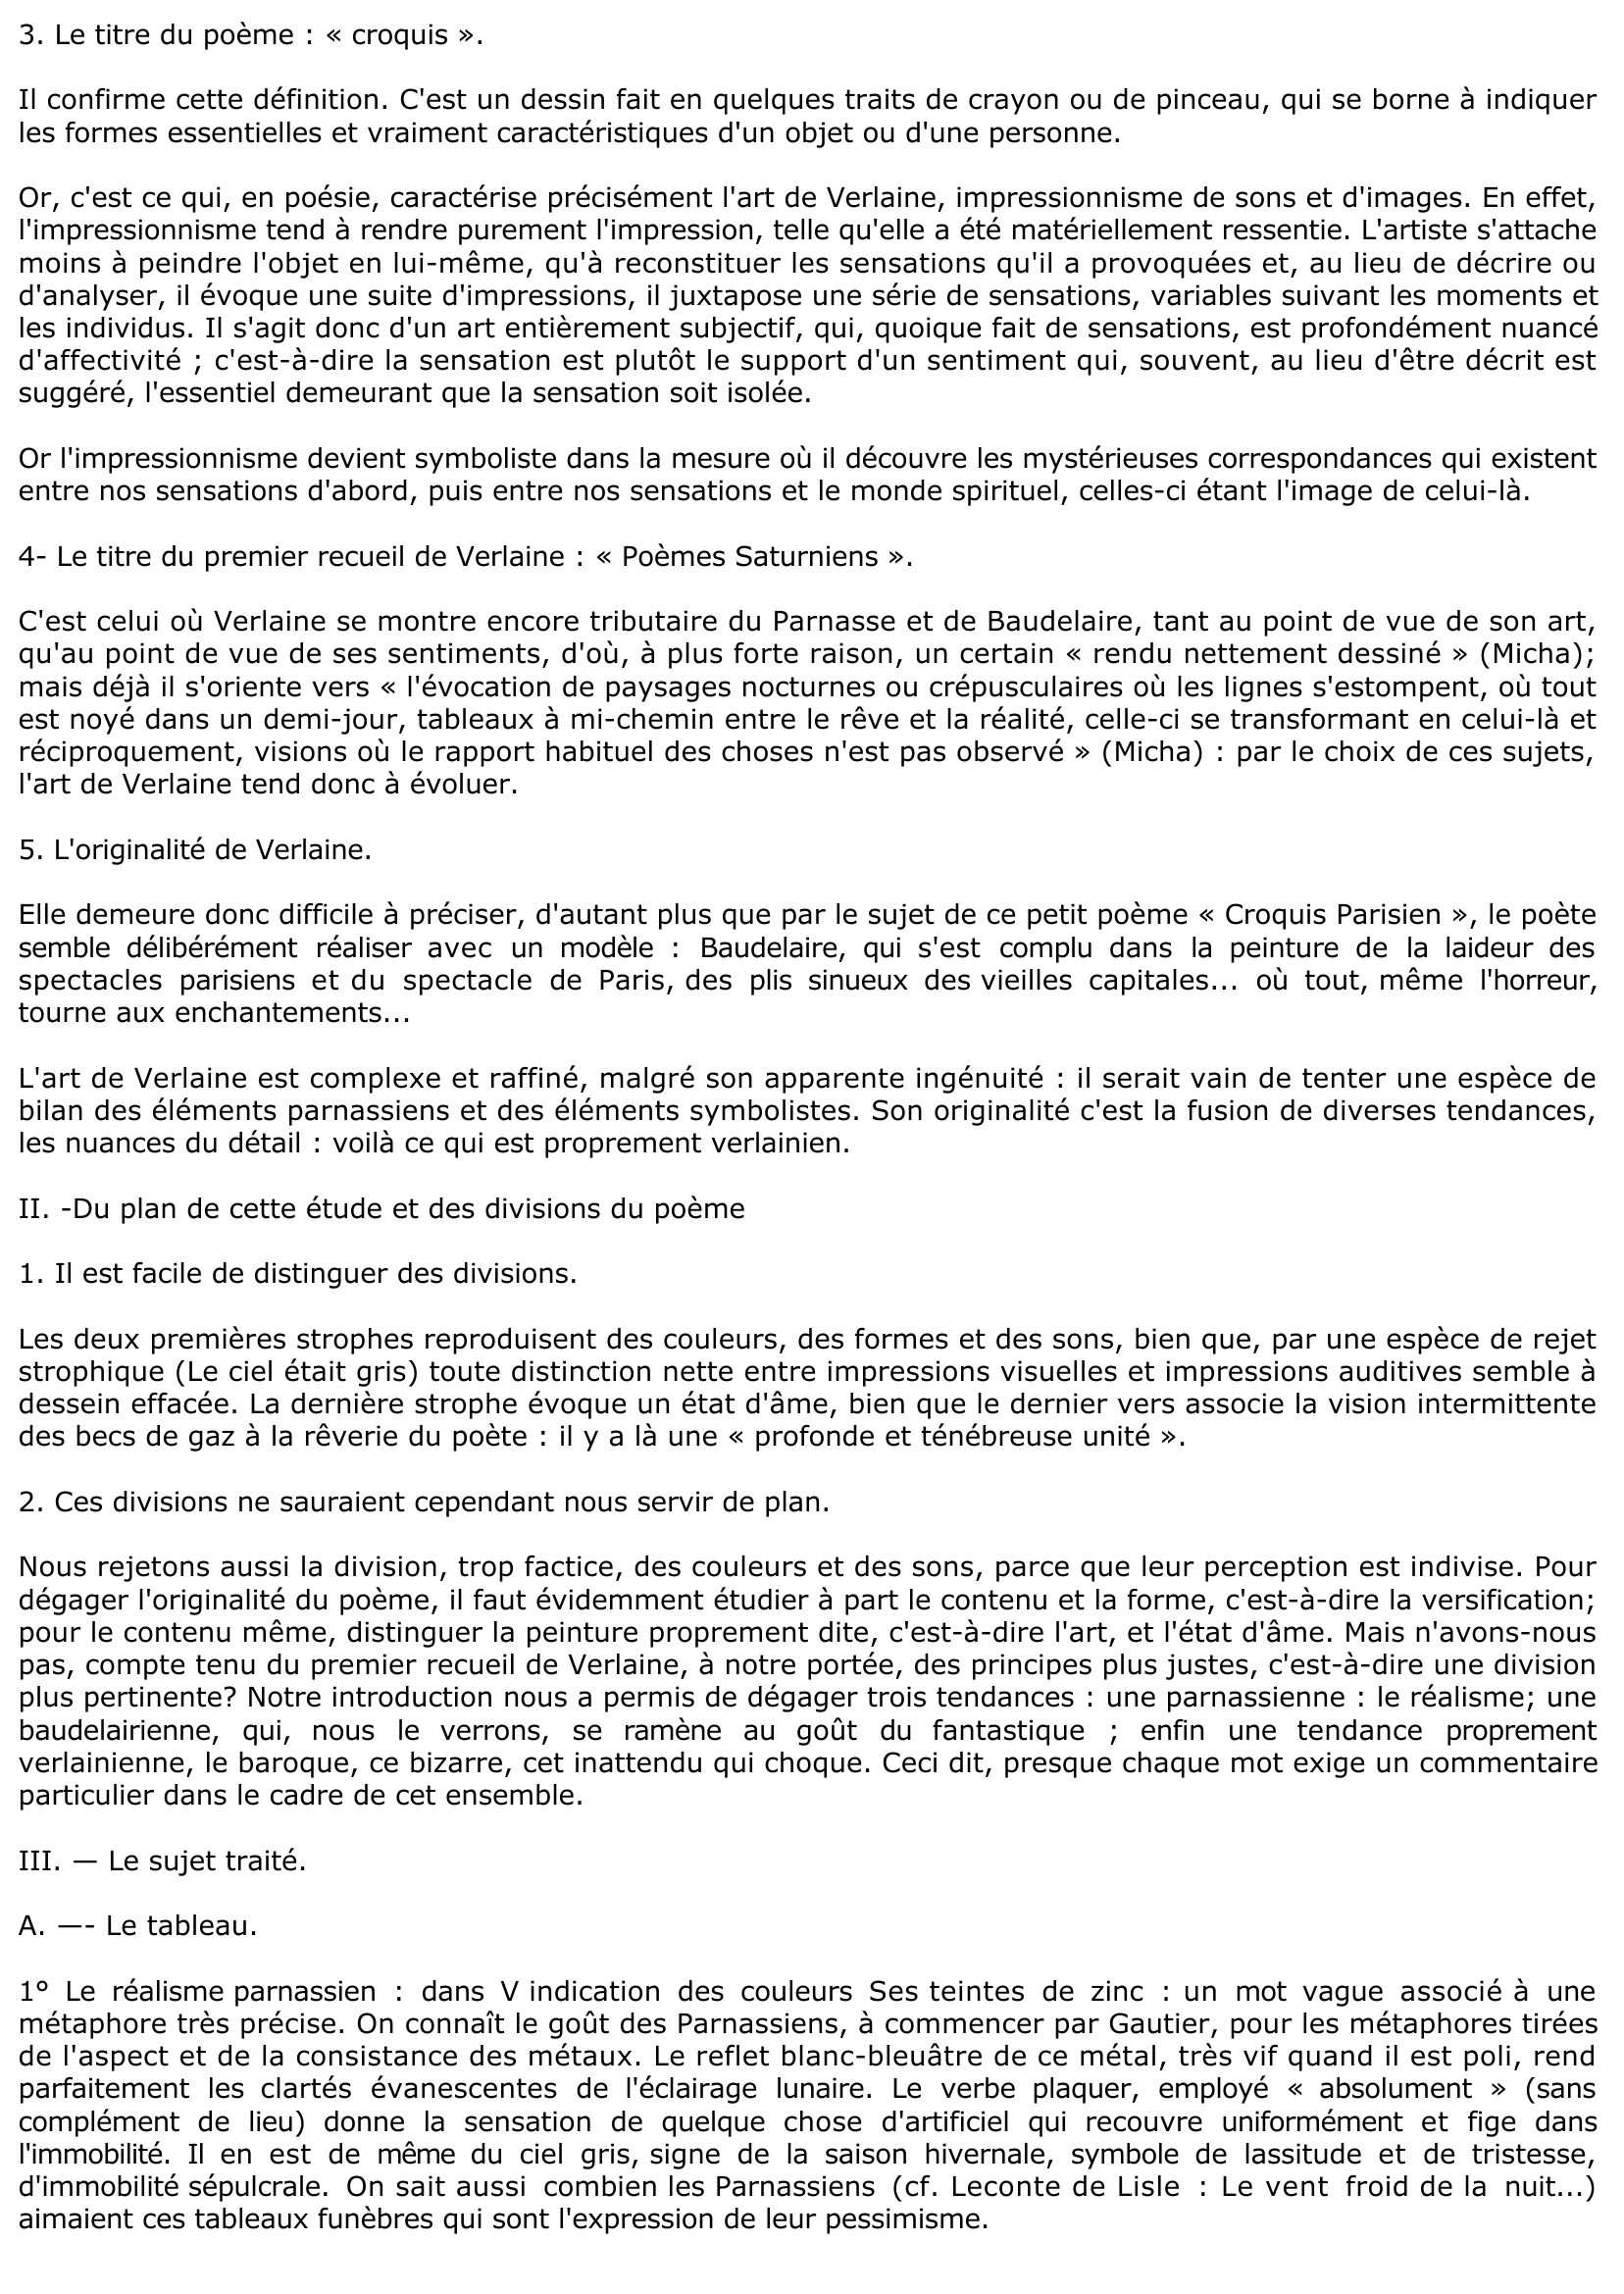 Prévisualisation du document Croquis Parisien (Eau-forte) - Verlaine